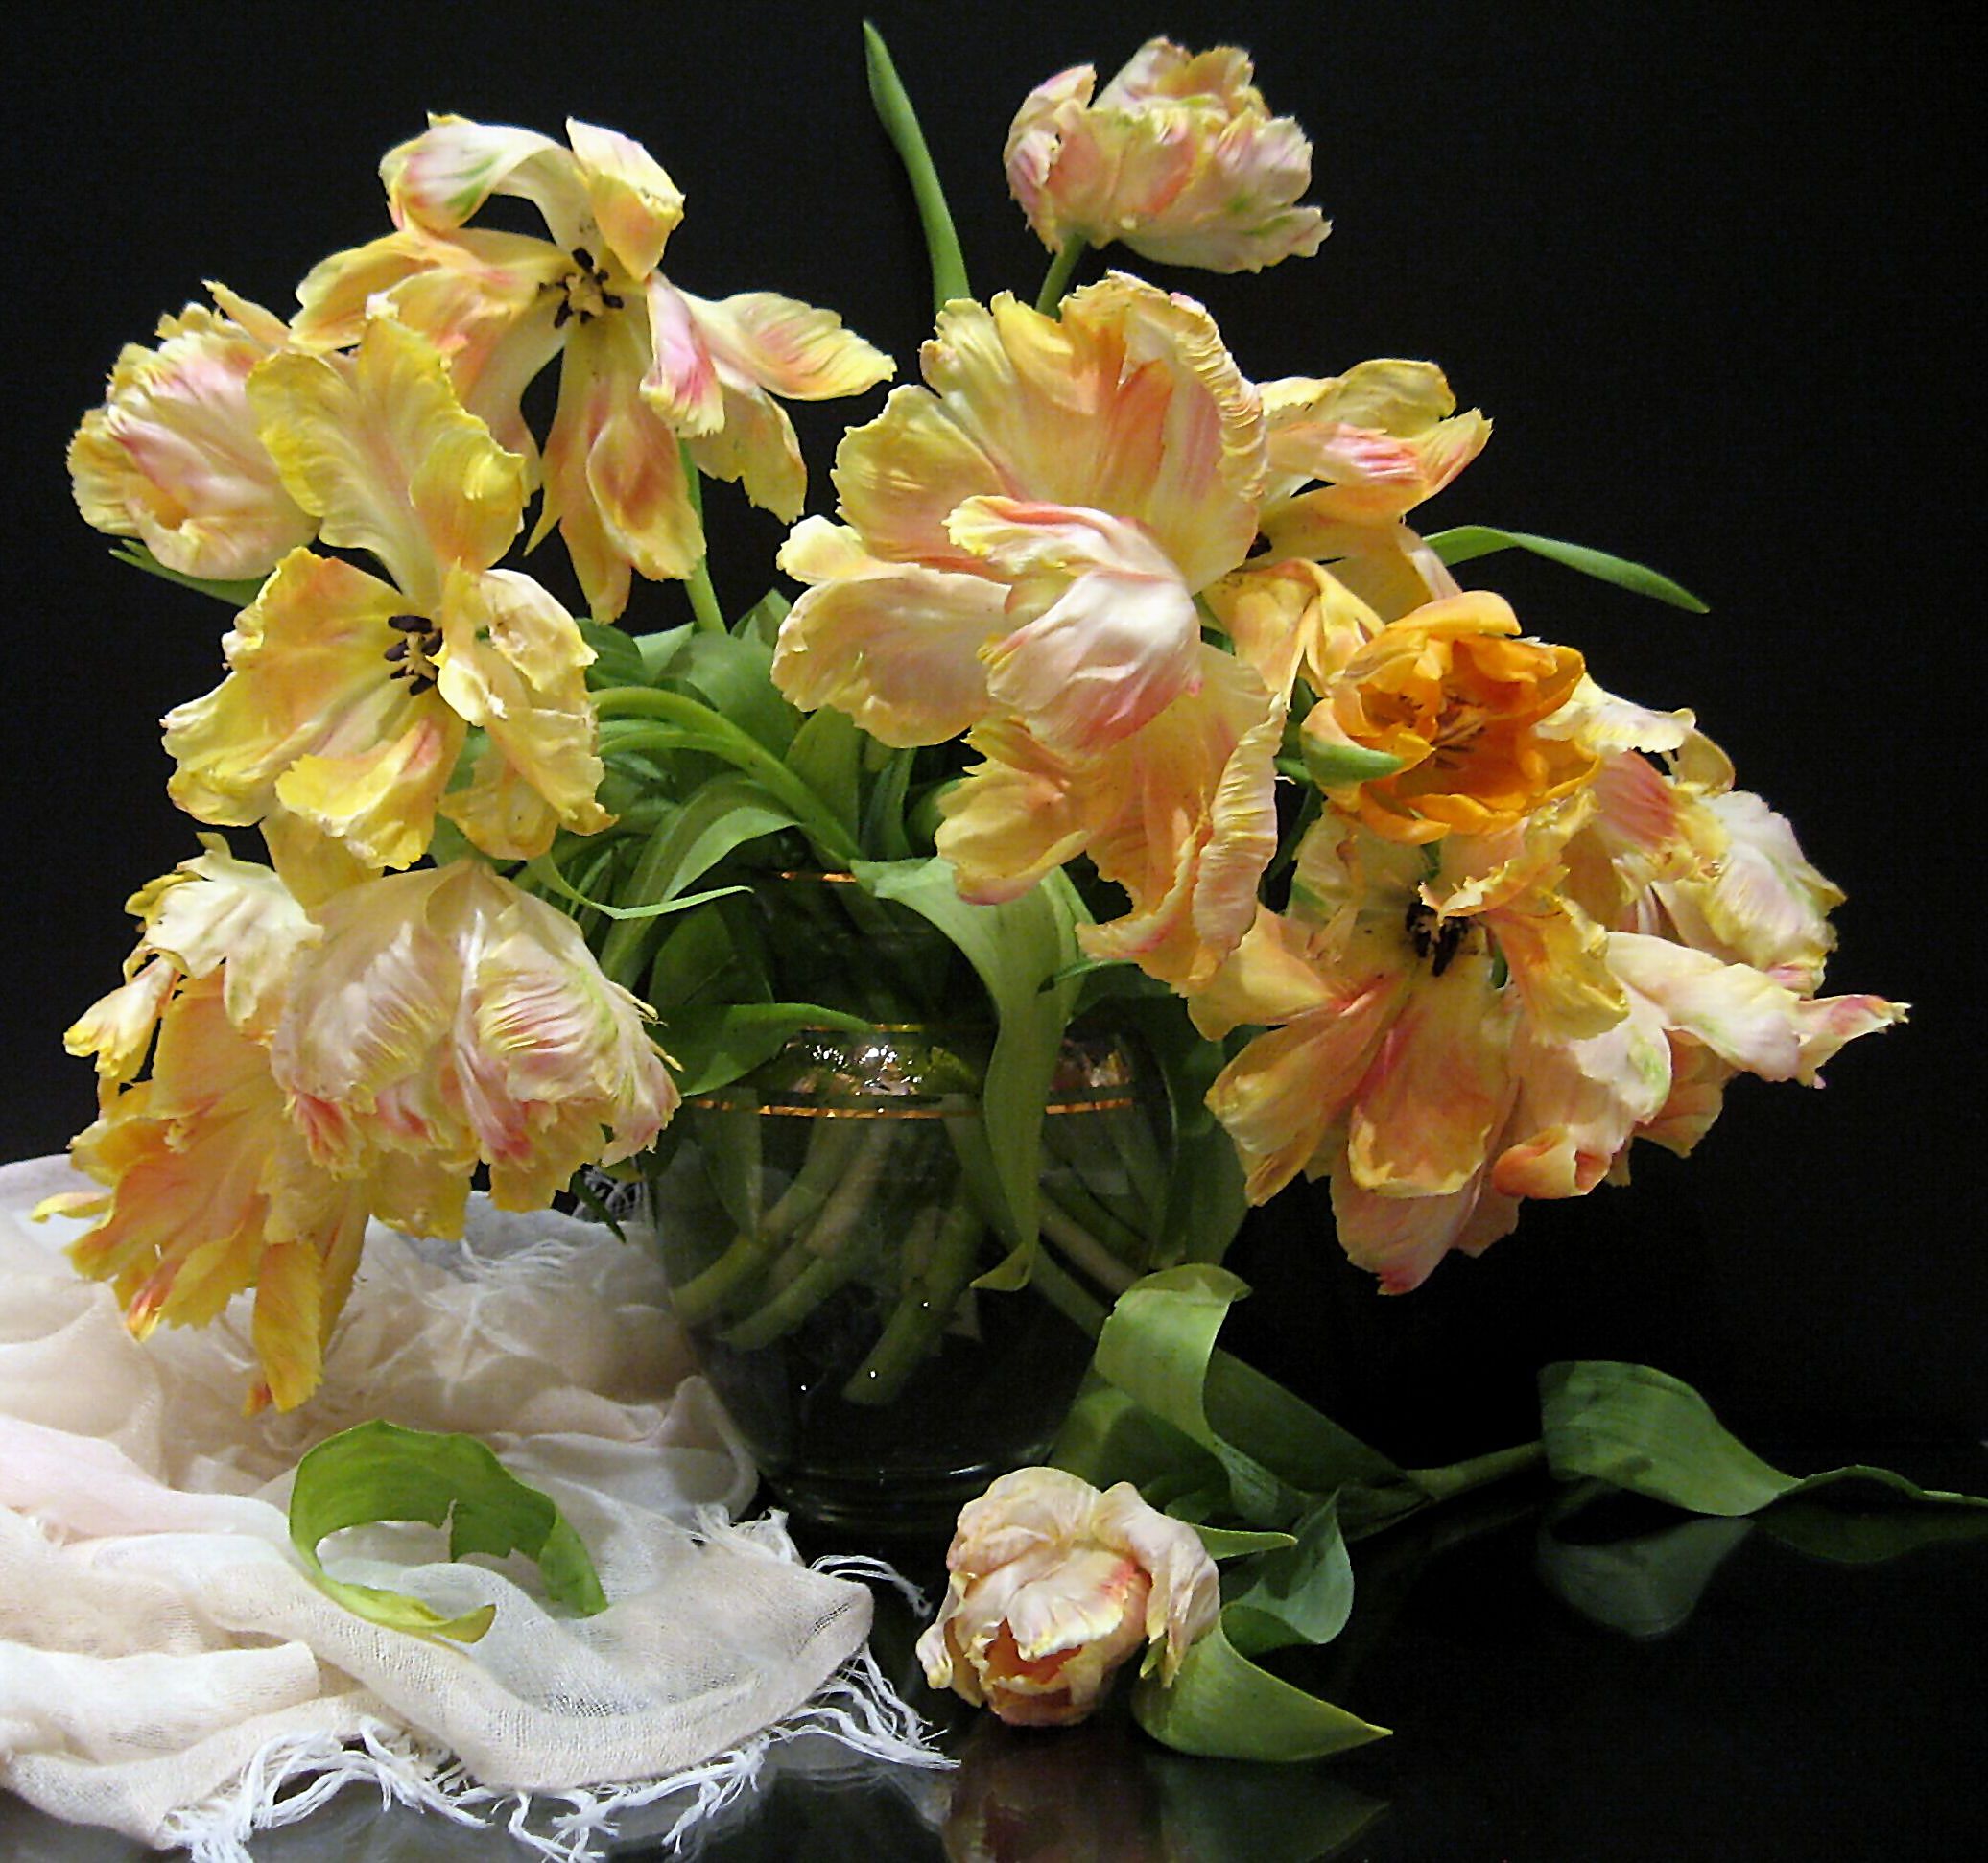 цветы, букет, тюльпаны, желтый цвет, ваза, хрусталь, шарф, Наталия Тихомирова